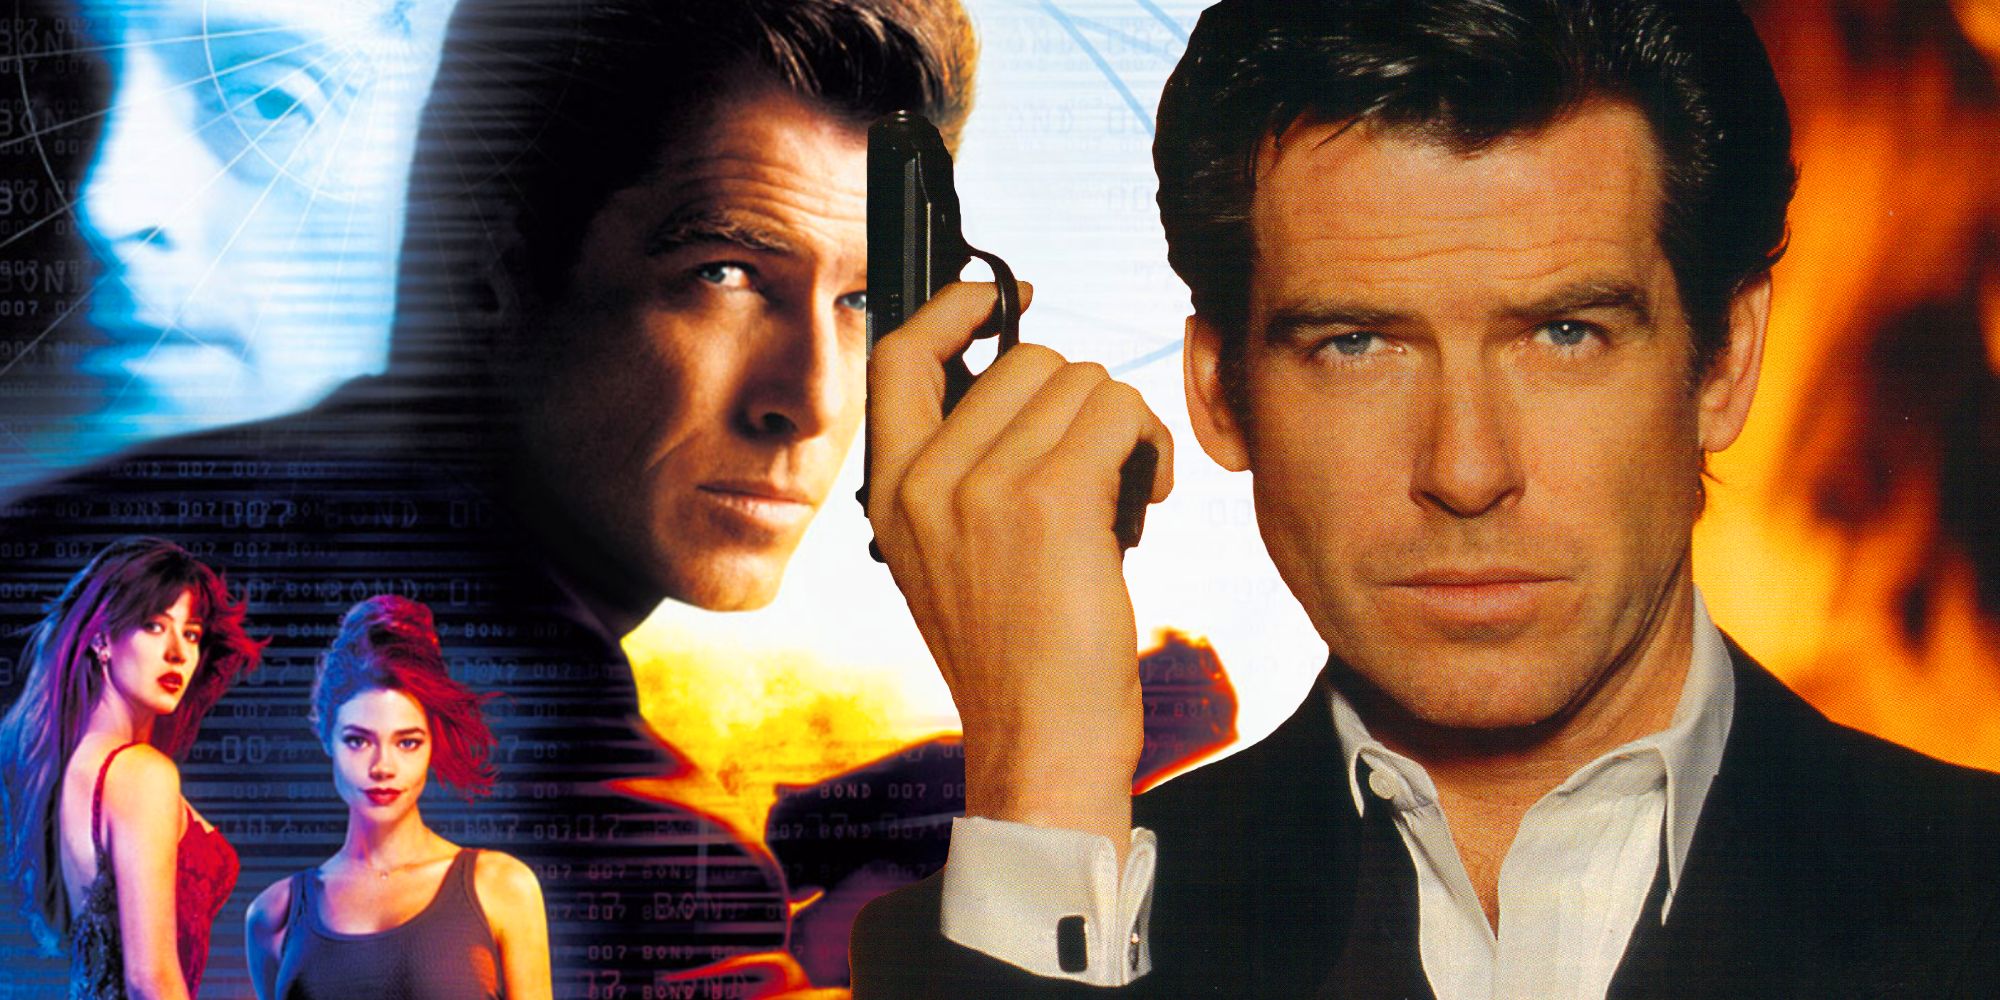 El mundo nunca es suficiente contiene la muerte más oscura de Pierce Brosnan como James Bond